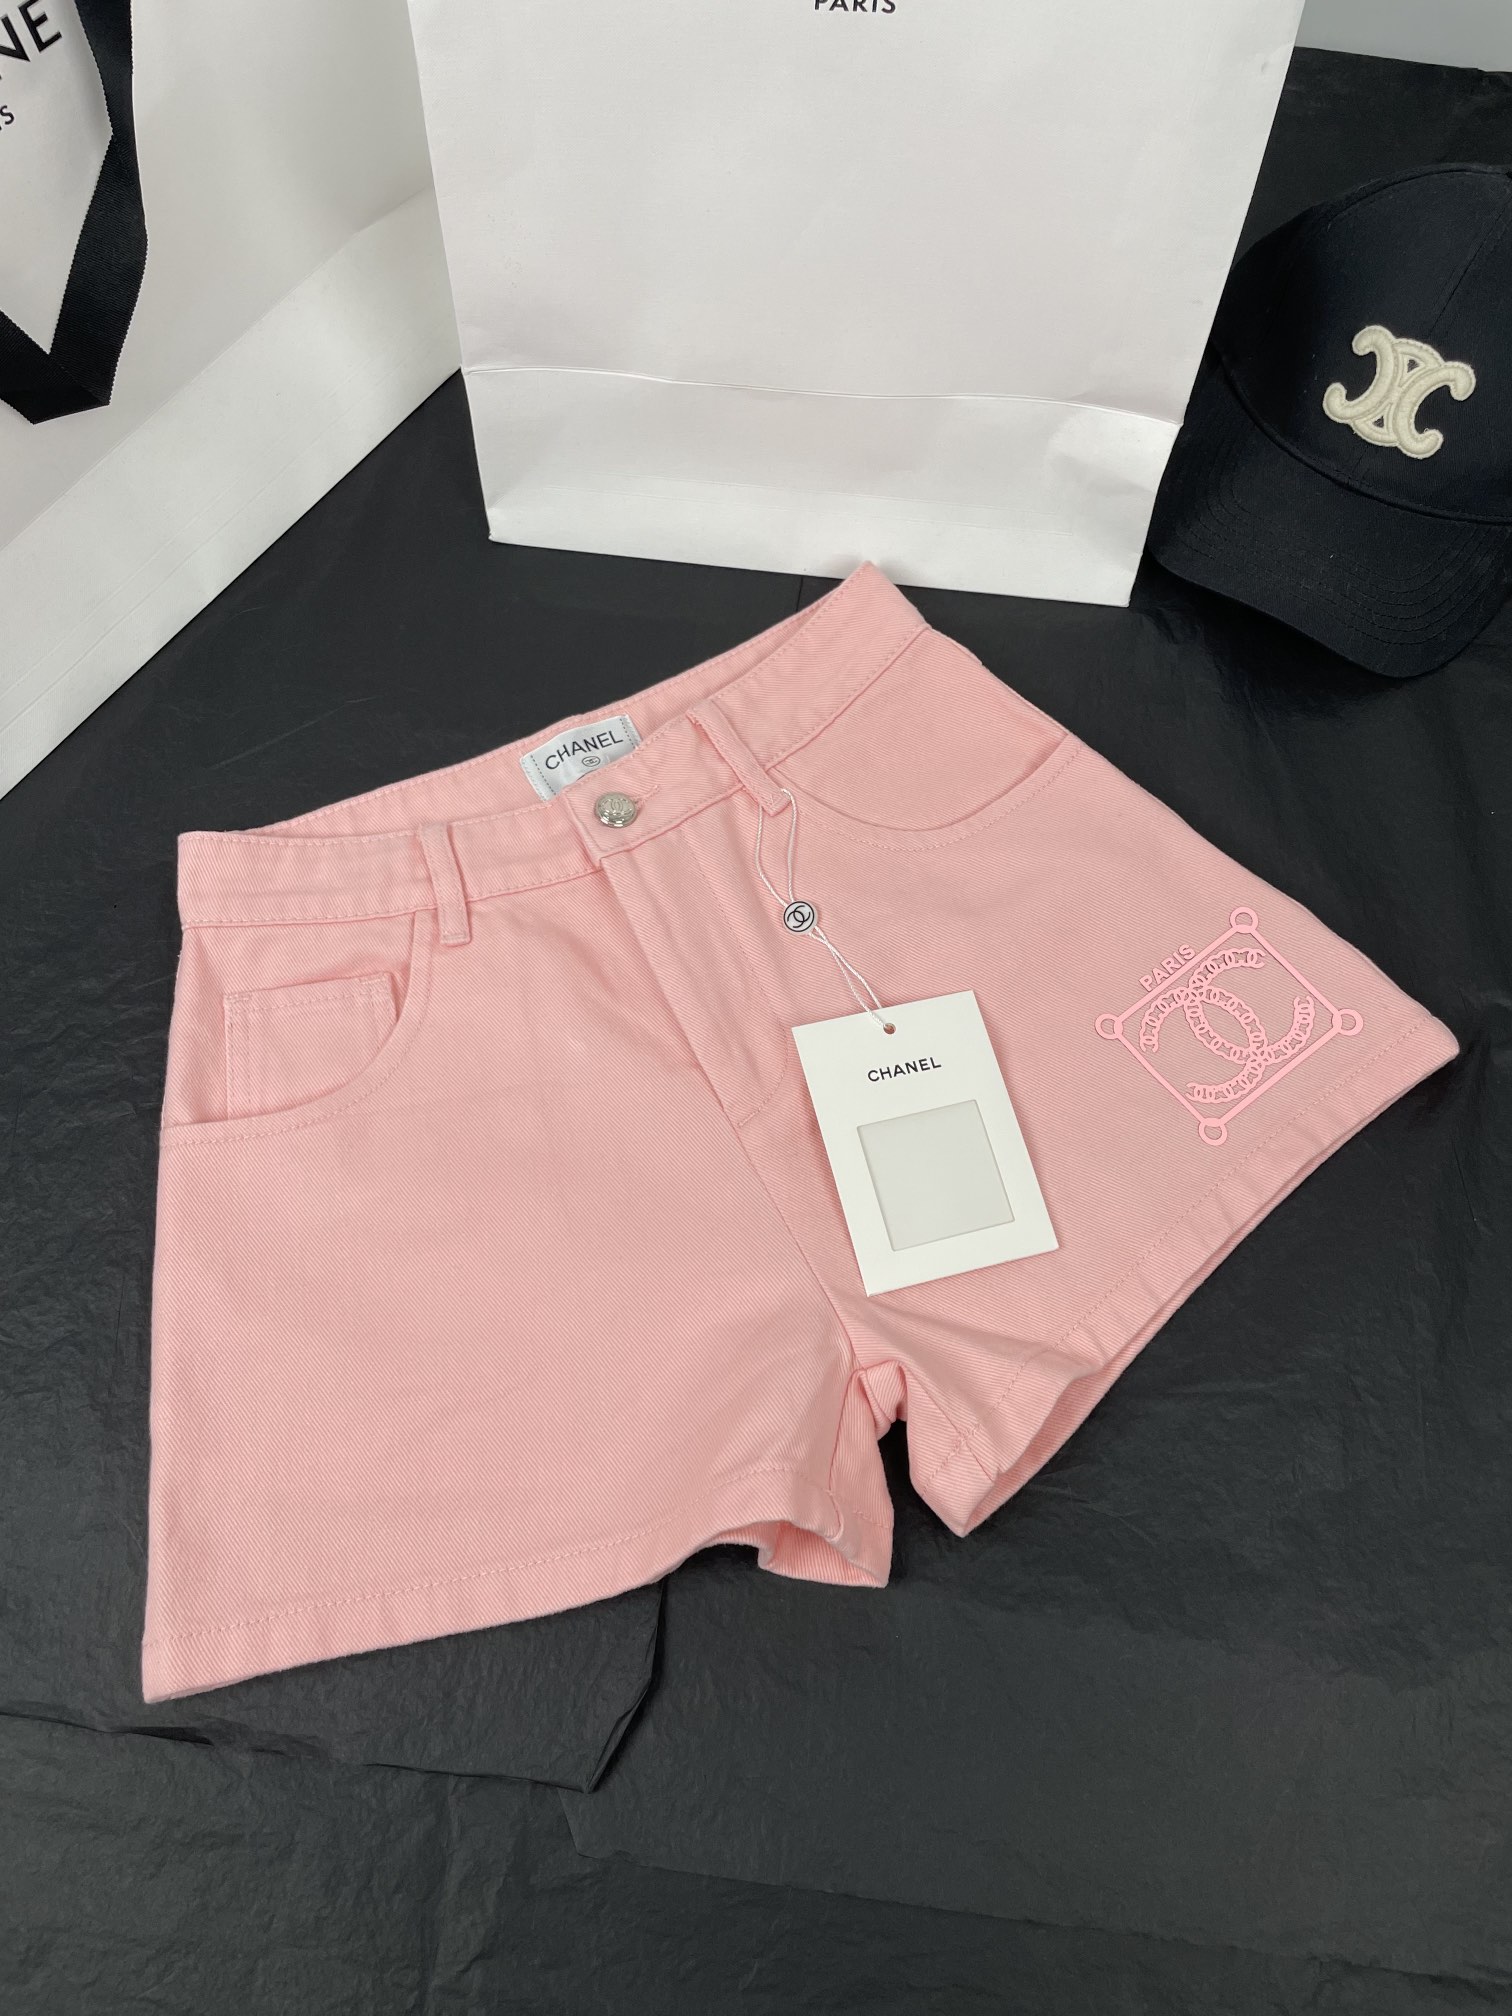 シャネルズボンコピー ショートパンツ 夏服 美しい ファッション 柔らかい 三つ色 ピンク_5